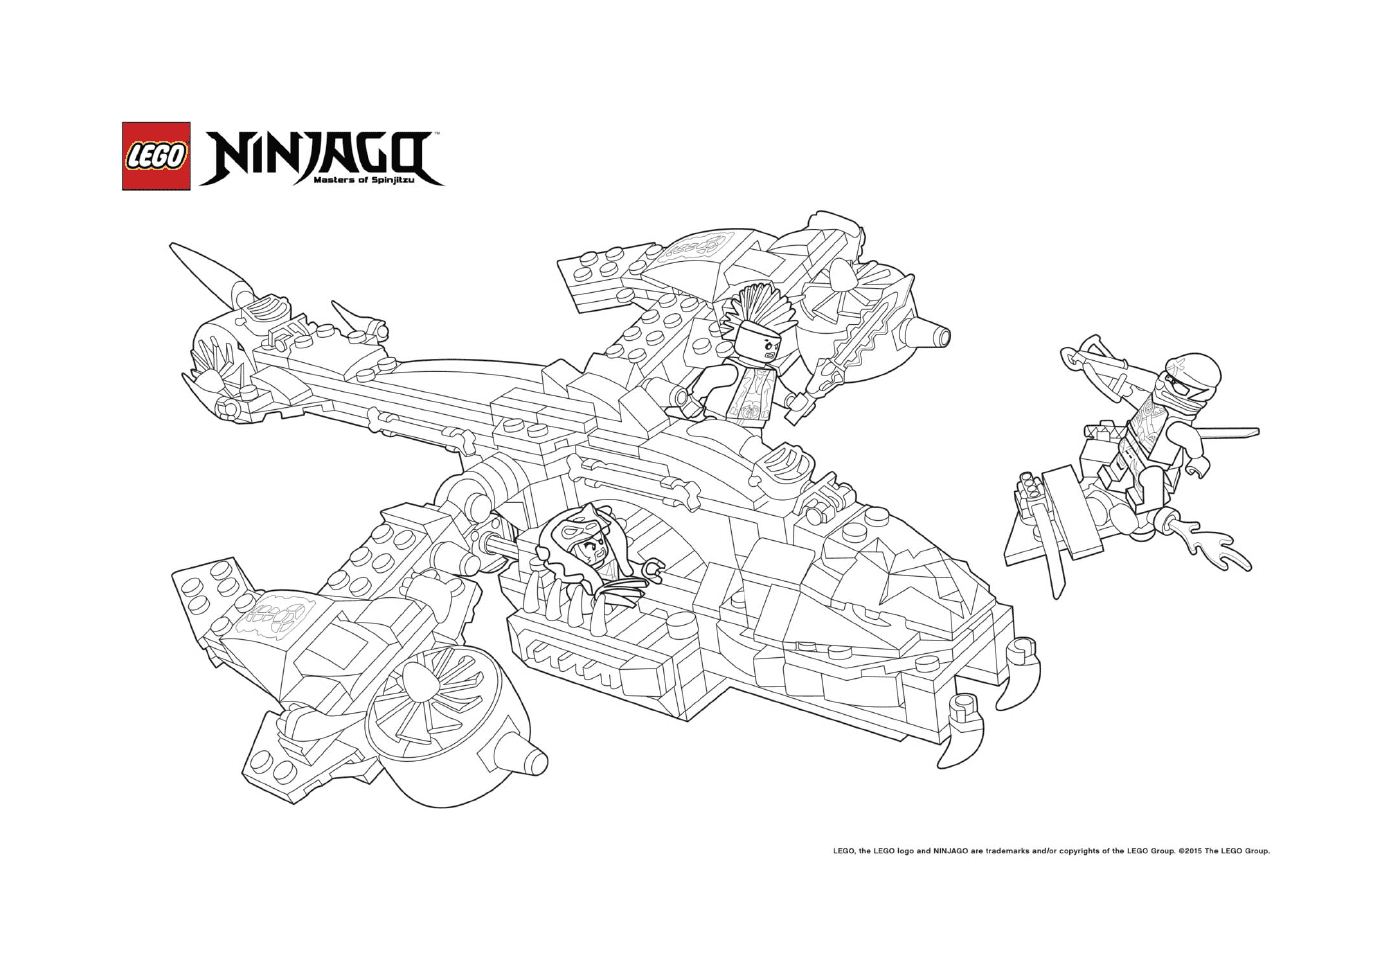   Ninjago lego avion de chasse 